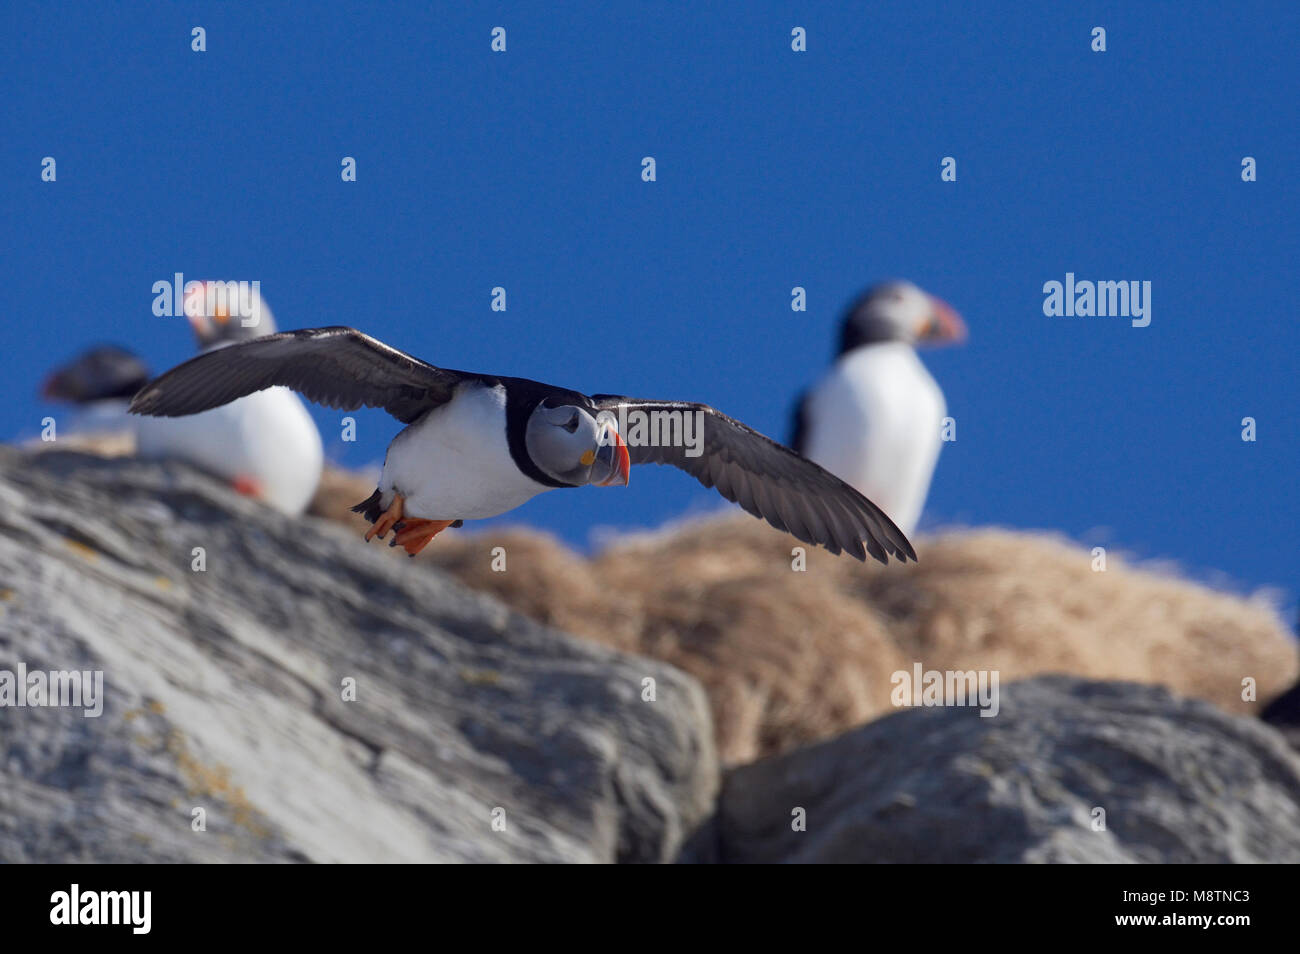 Papegaaiduiker vliegend voor rots; Atlantic Puffin flying infront of rock Stock Photo